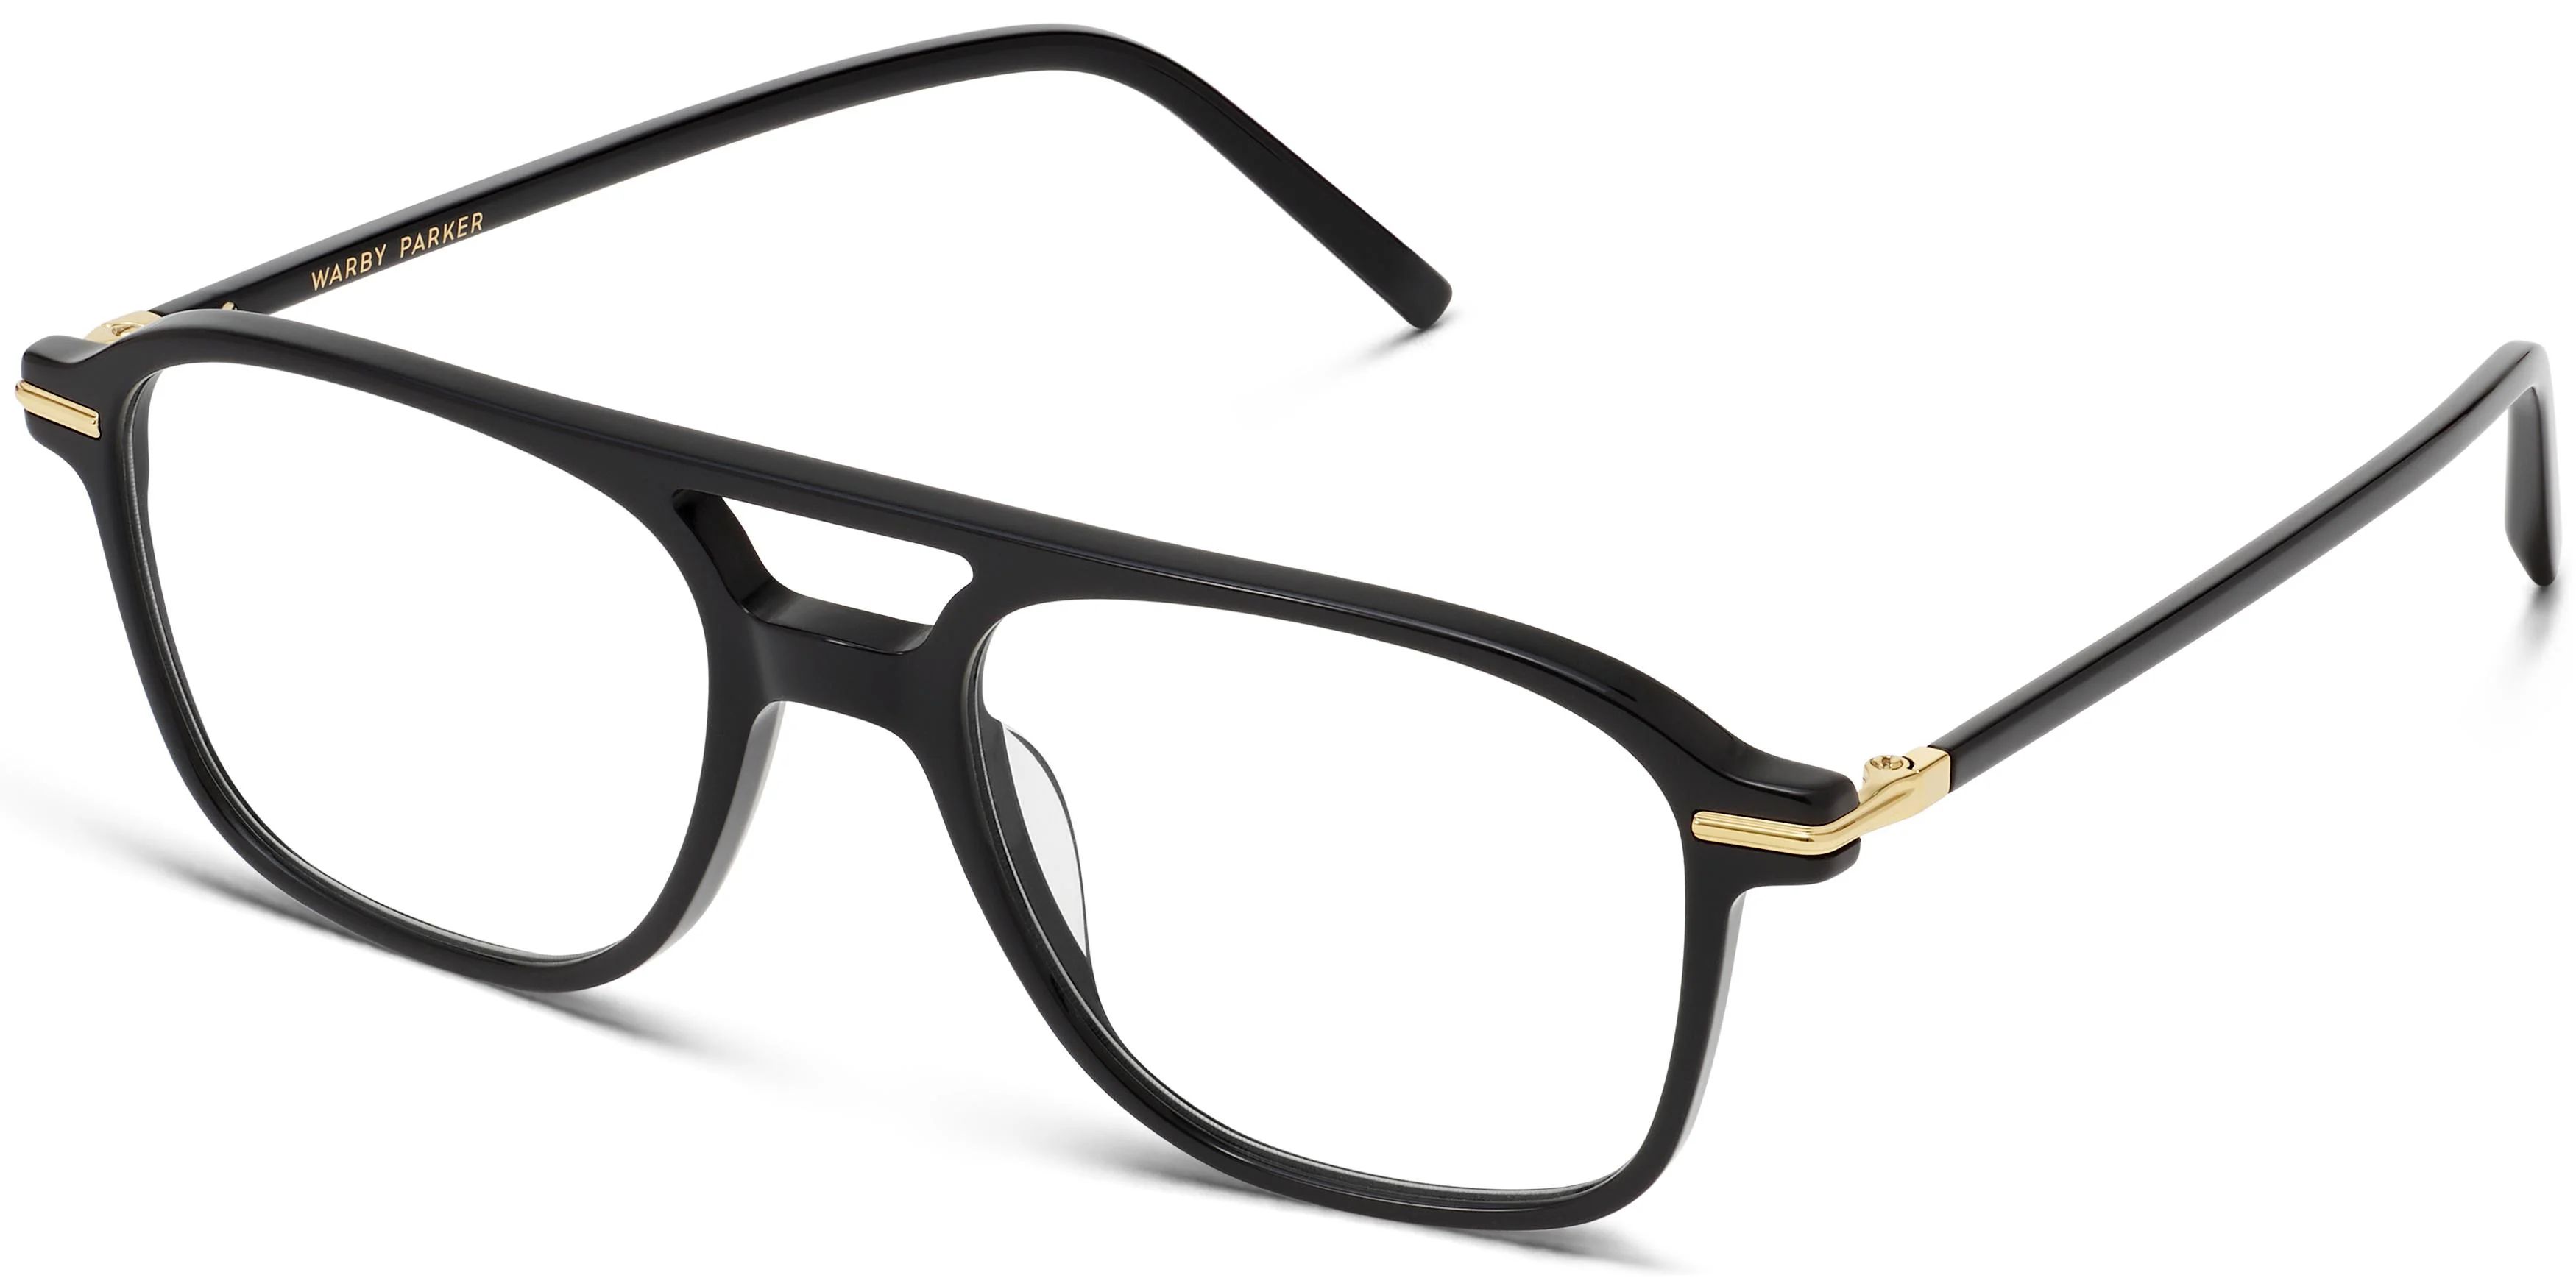 Brimmer Eyeglasses in Jet Black with Polished Gold | Warby Parker | Warby Parker (US)